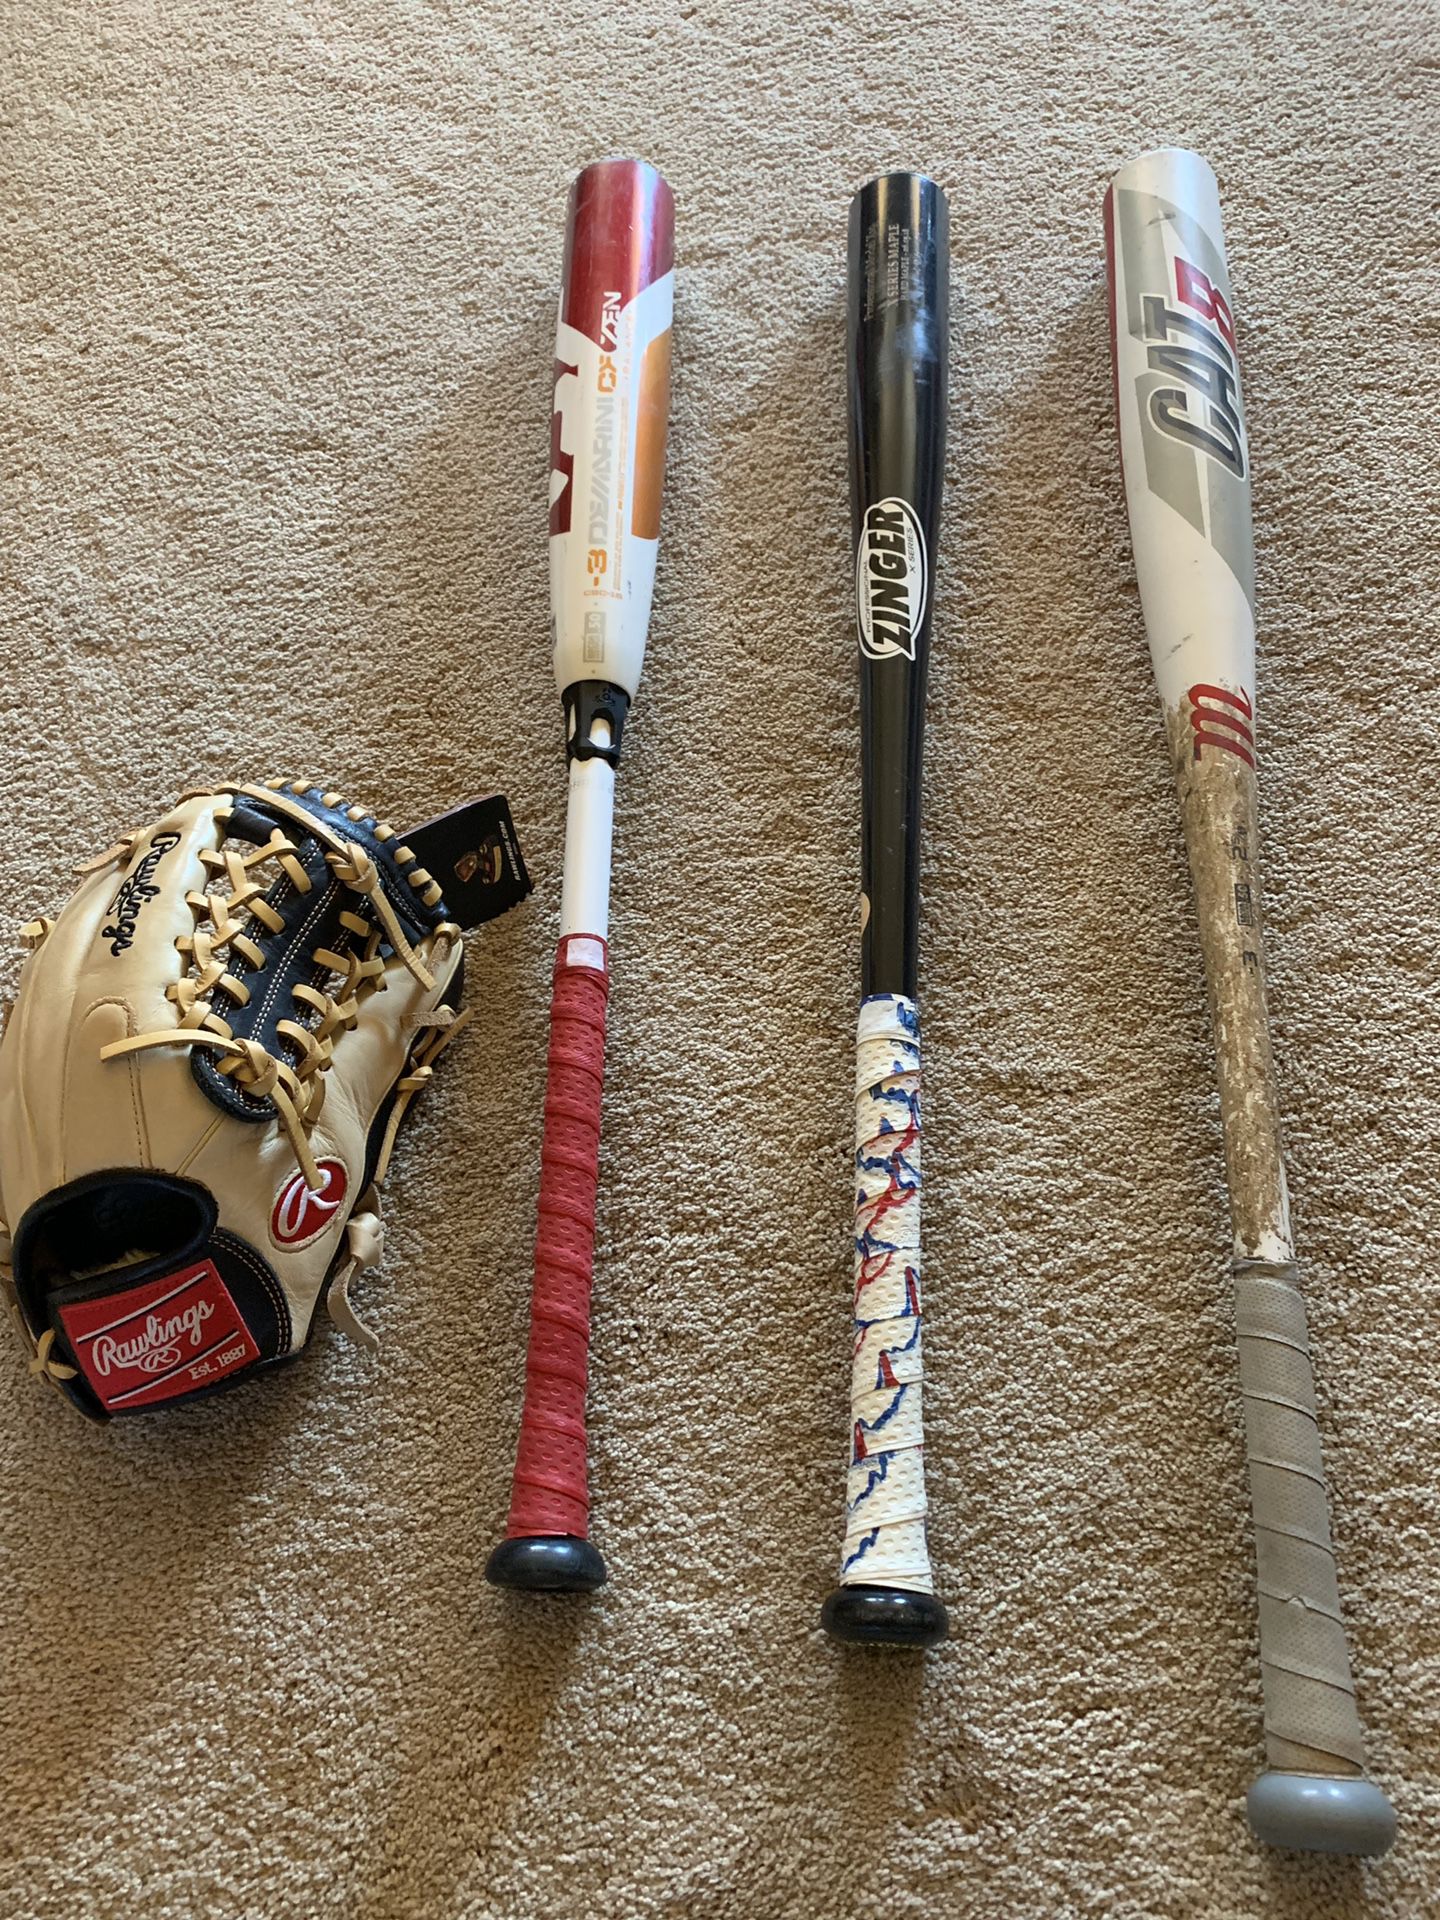 Baseball bats and glove